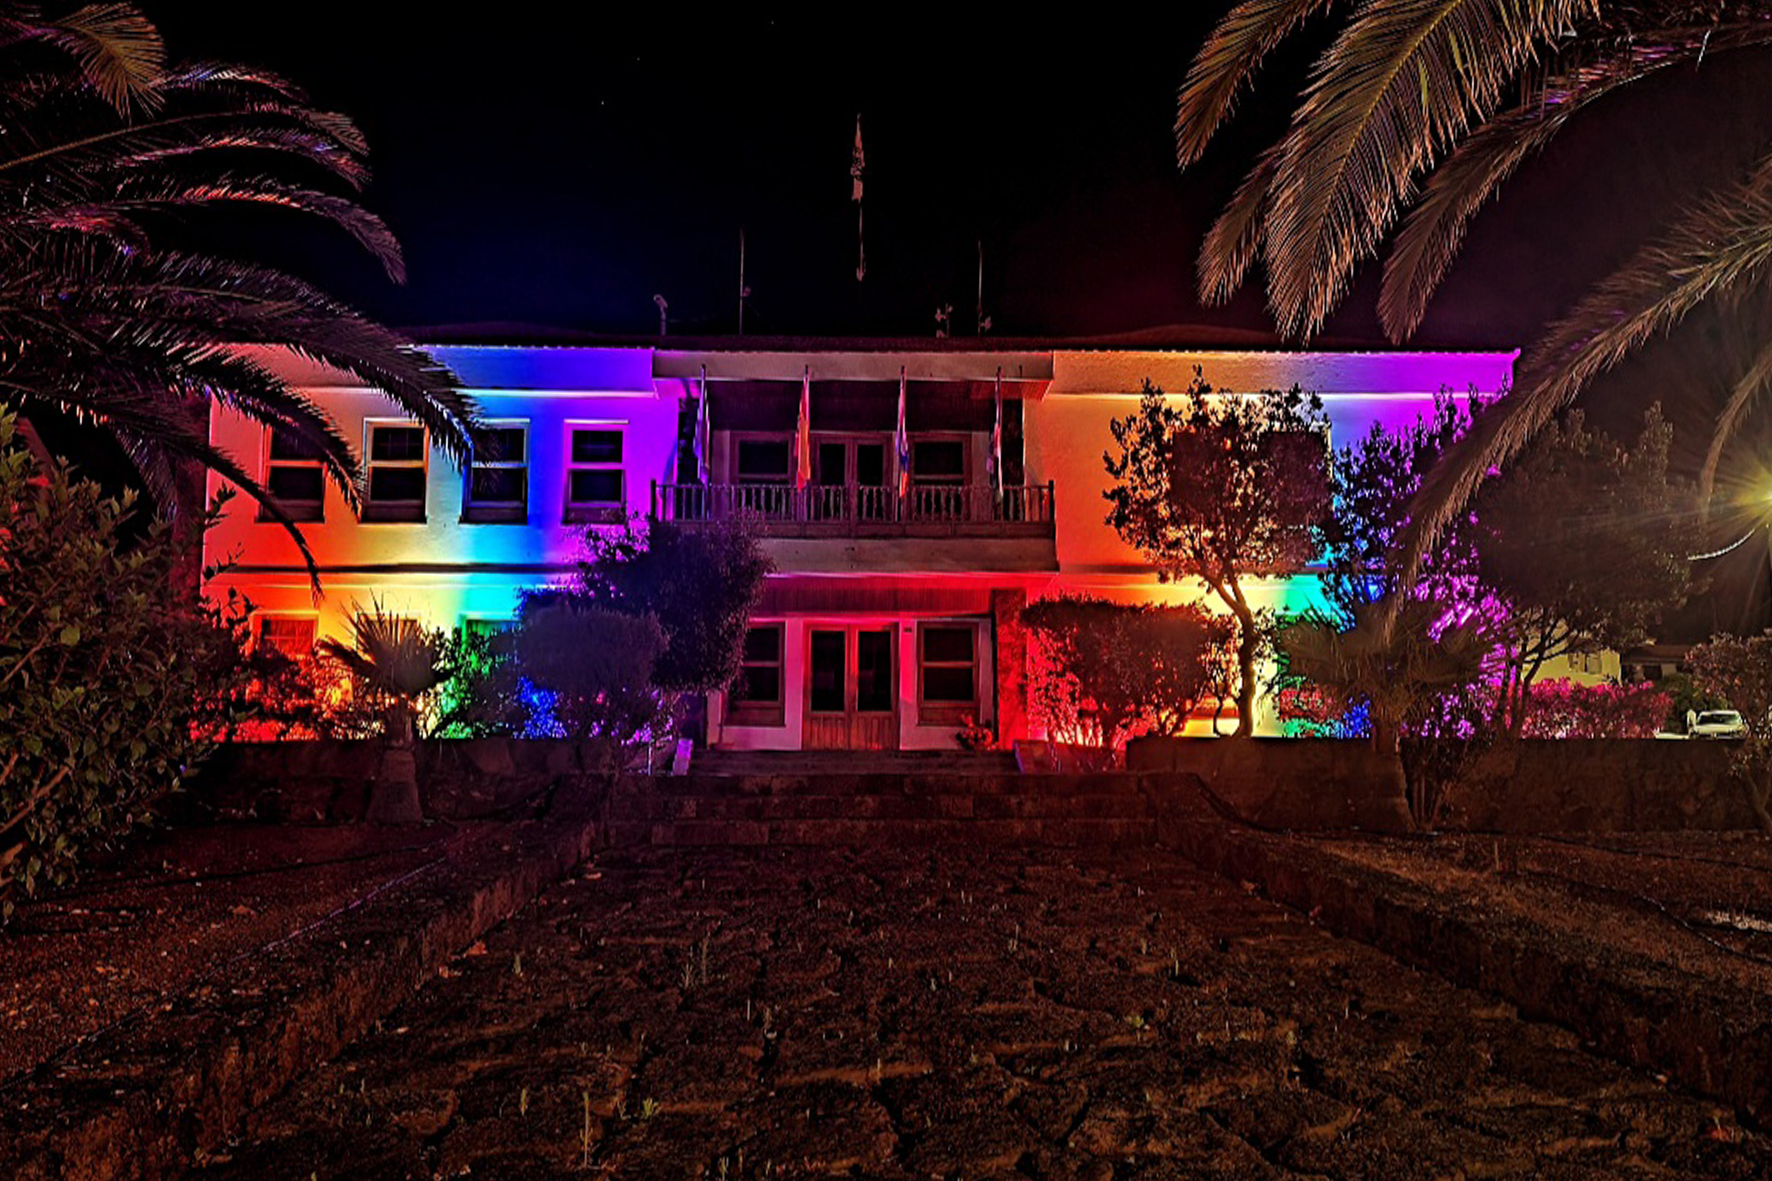 La Frontera ilumina la fachada de su Ayuntamiento con los colores del arco iris en conmemoración del Día Internacional del Orgullo LGTBI